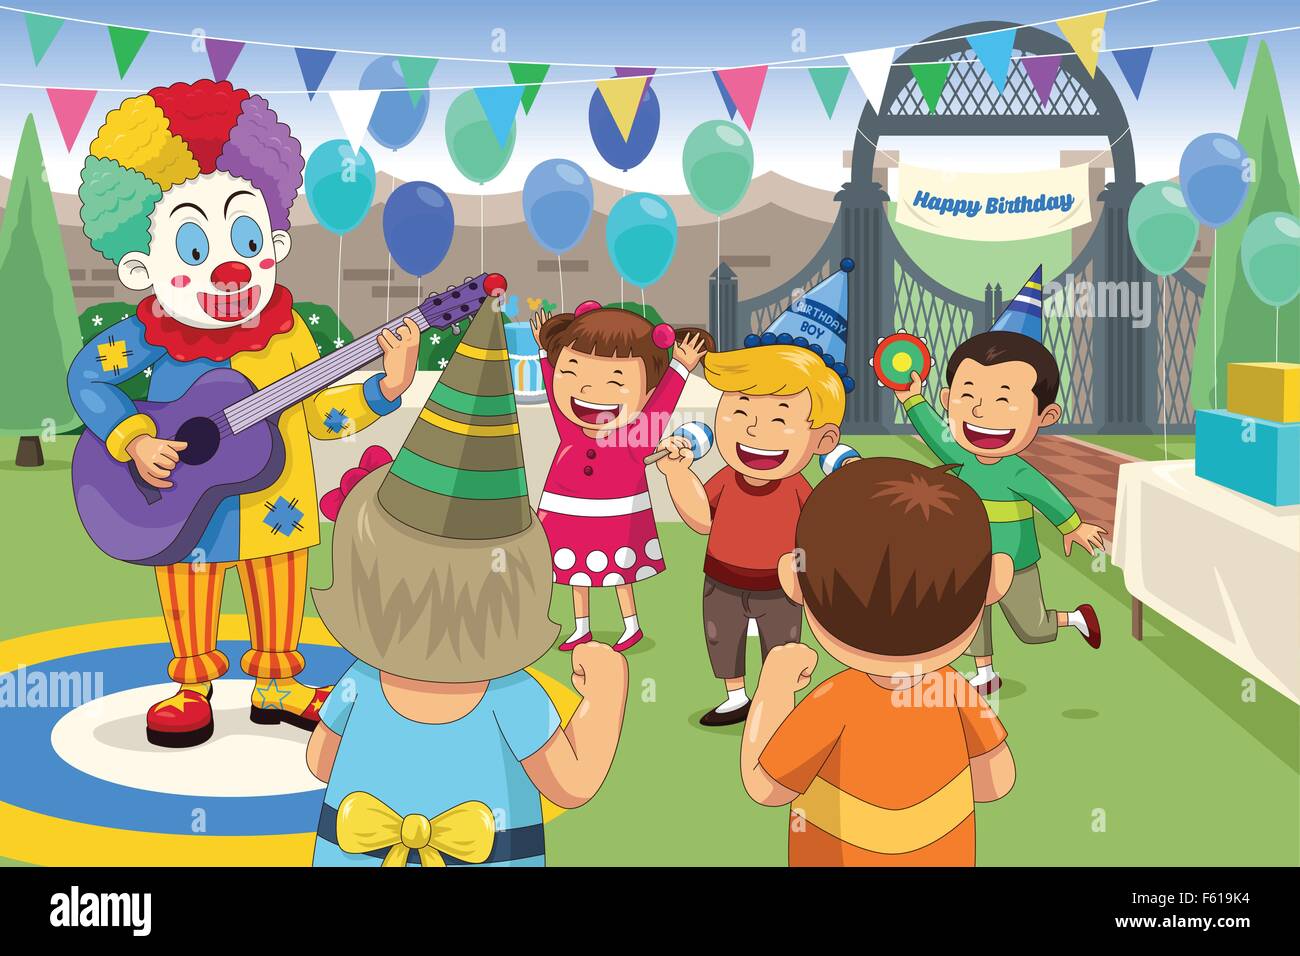 Eine Vektor-Illustration der Clown bei einer Kinder-Geburtstagsparty Stock Vektor